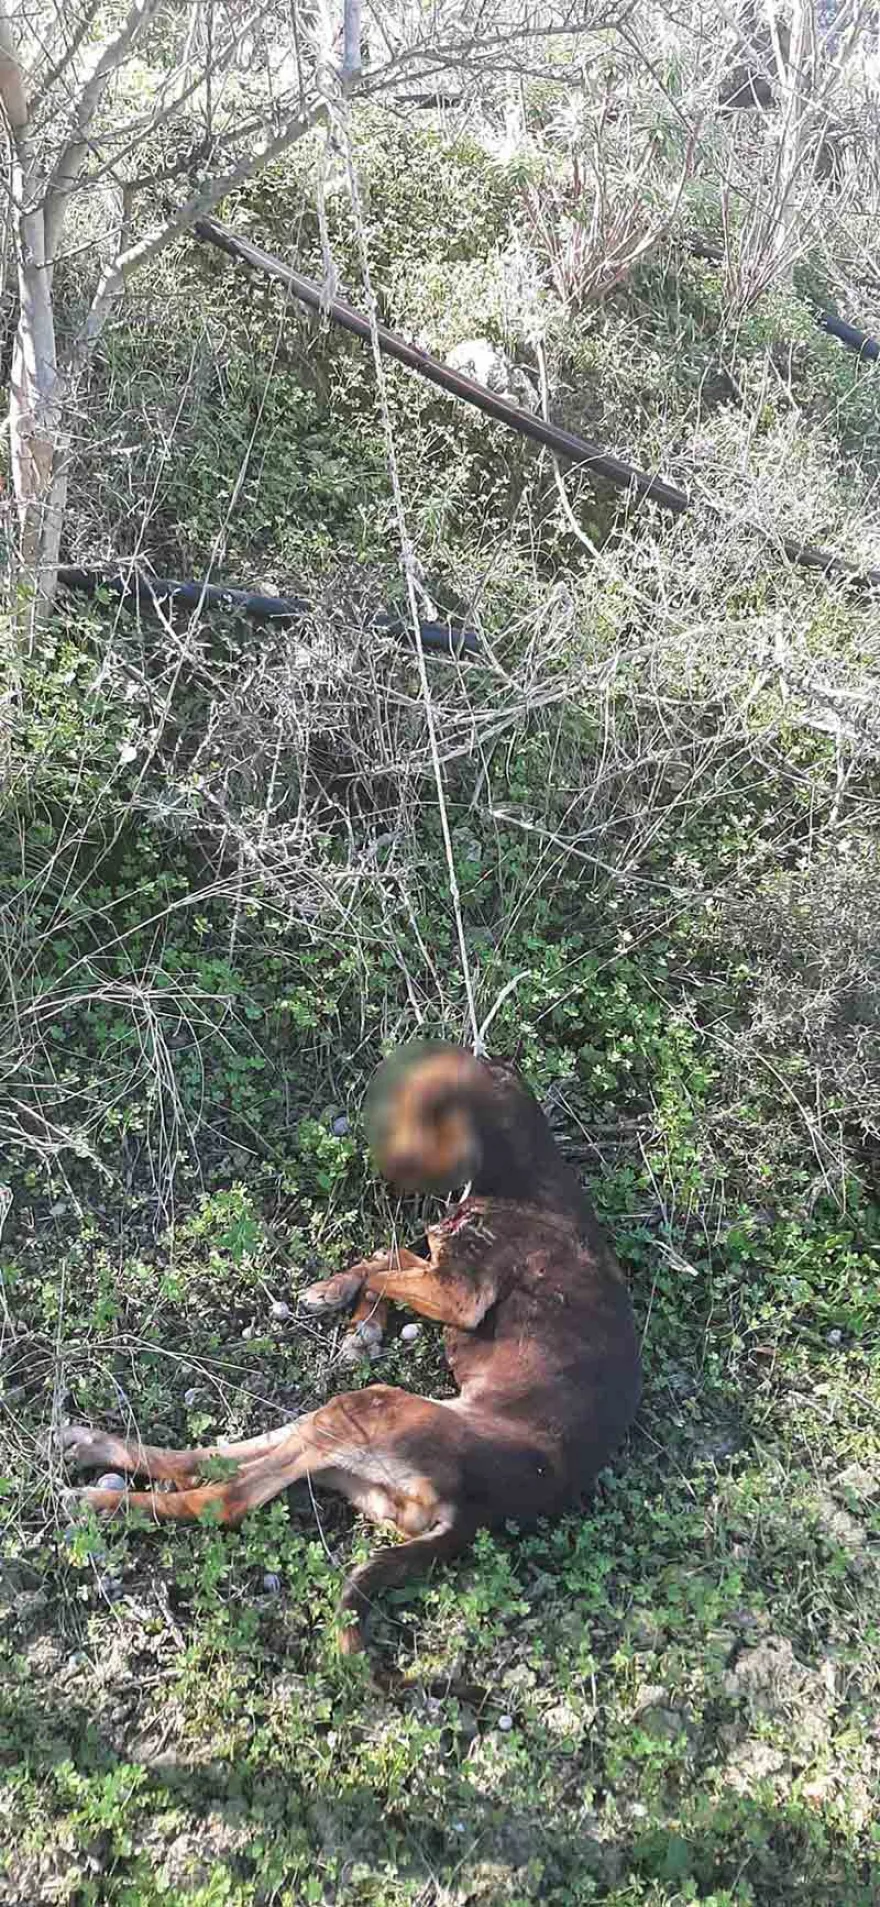 Κτηνωδία: Σκυλί βρέθηκε κρεμασμένο σε χωριό του Ηρακλείου